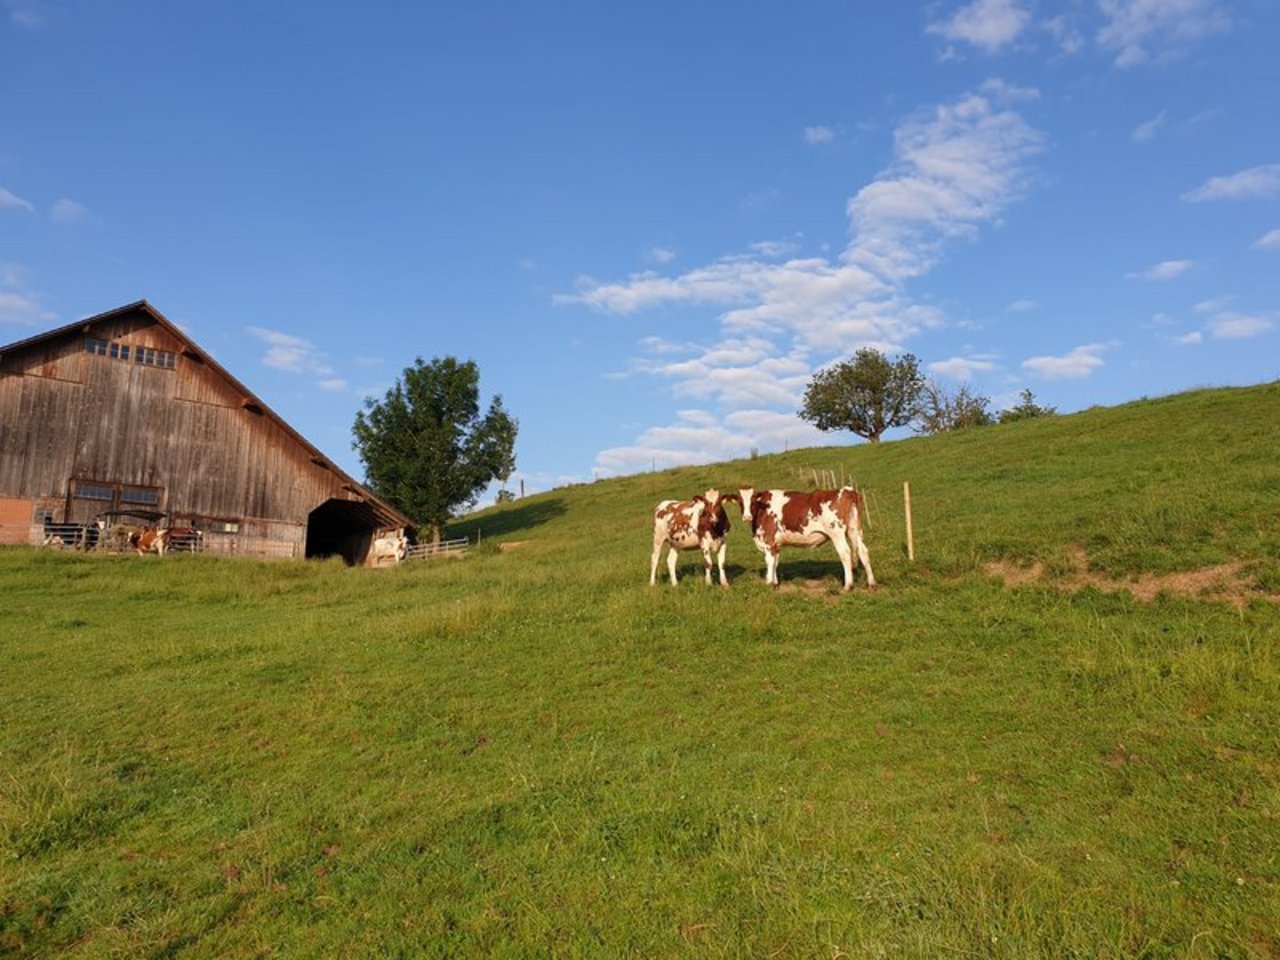 Labelprodukte wie IP-Suisse, Bio-Suisse, Weidebeef, Kag-Freiland sollen aus Sicht der Agrarallianz gefördert, der totale Konsum an Fleisch, Milch und Eiern aber gesenkt werden. (Symbolbild BauZ)